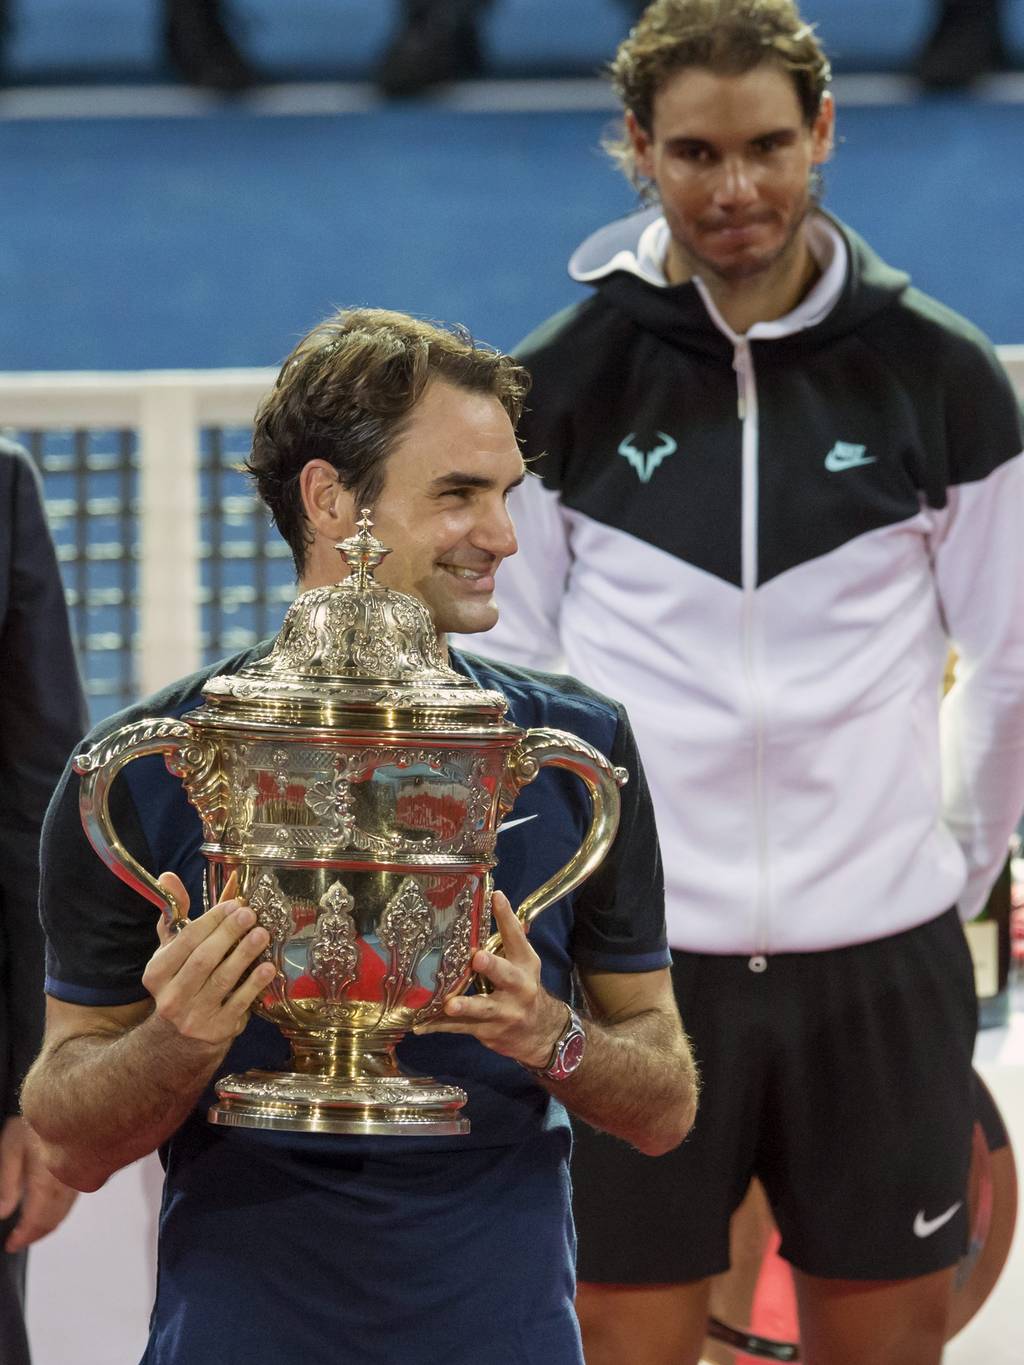 Roger Federer comentó que al menos jugará la temporada 2016 de la ATP, el suizo cumplirá 35 años el próximo año y sigue manifestando un gran tenis y un buen estado físico. (EFE)